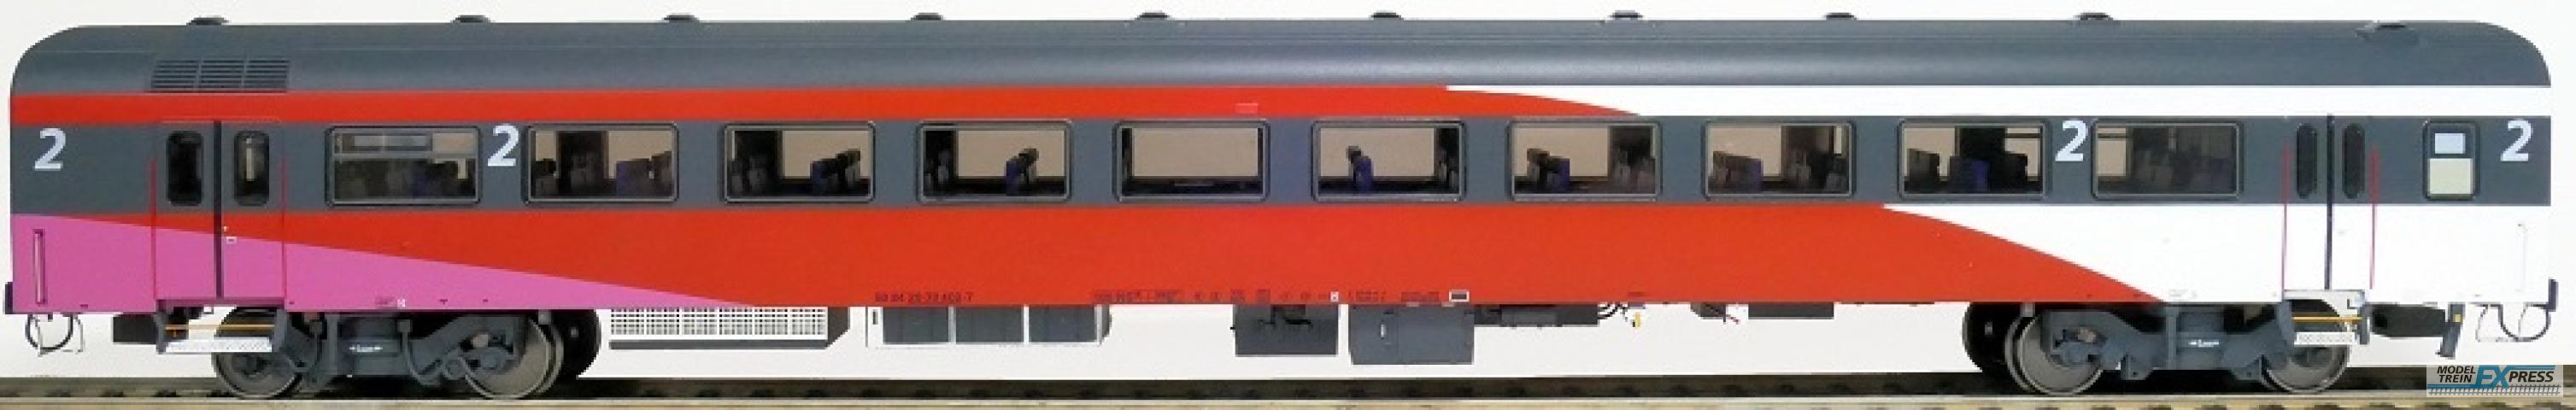 Exact-train 11184 NS ICRm Fyra 1 (Amsterdam - Brussel) für die Hsl-Strecke eingesetzt Endwagen B(Weiss/Rot/Rose) mit Beleuchtung und Figuren, Ep. VI